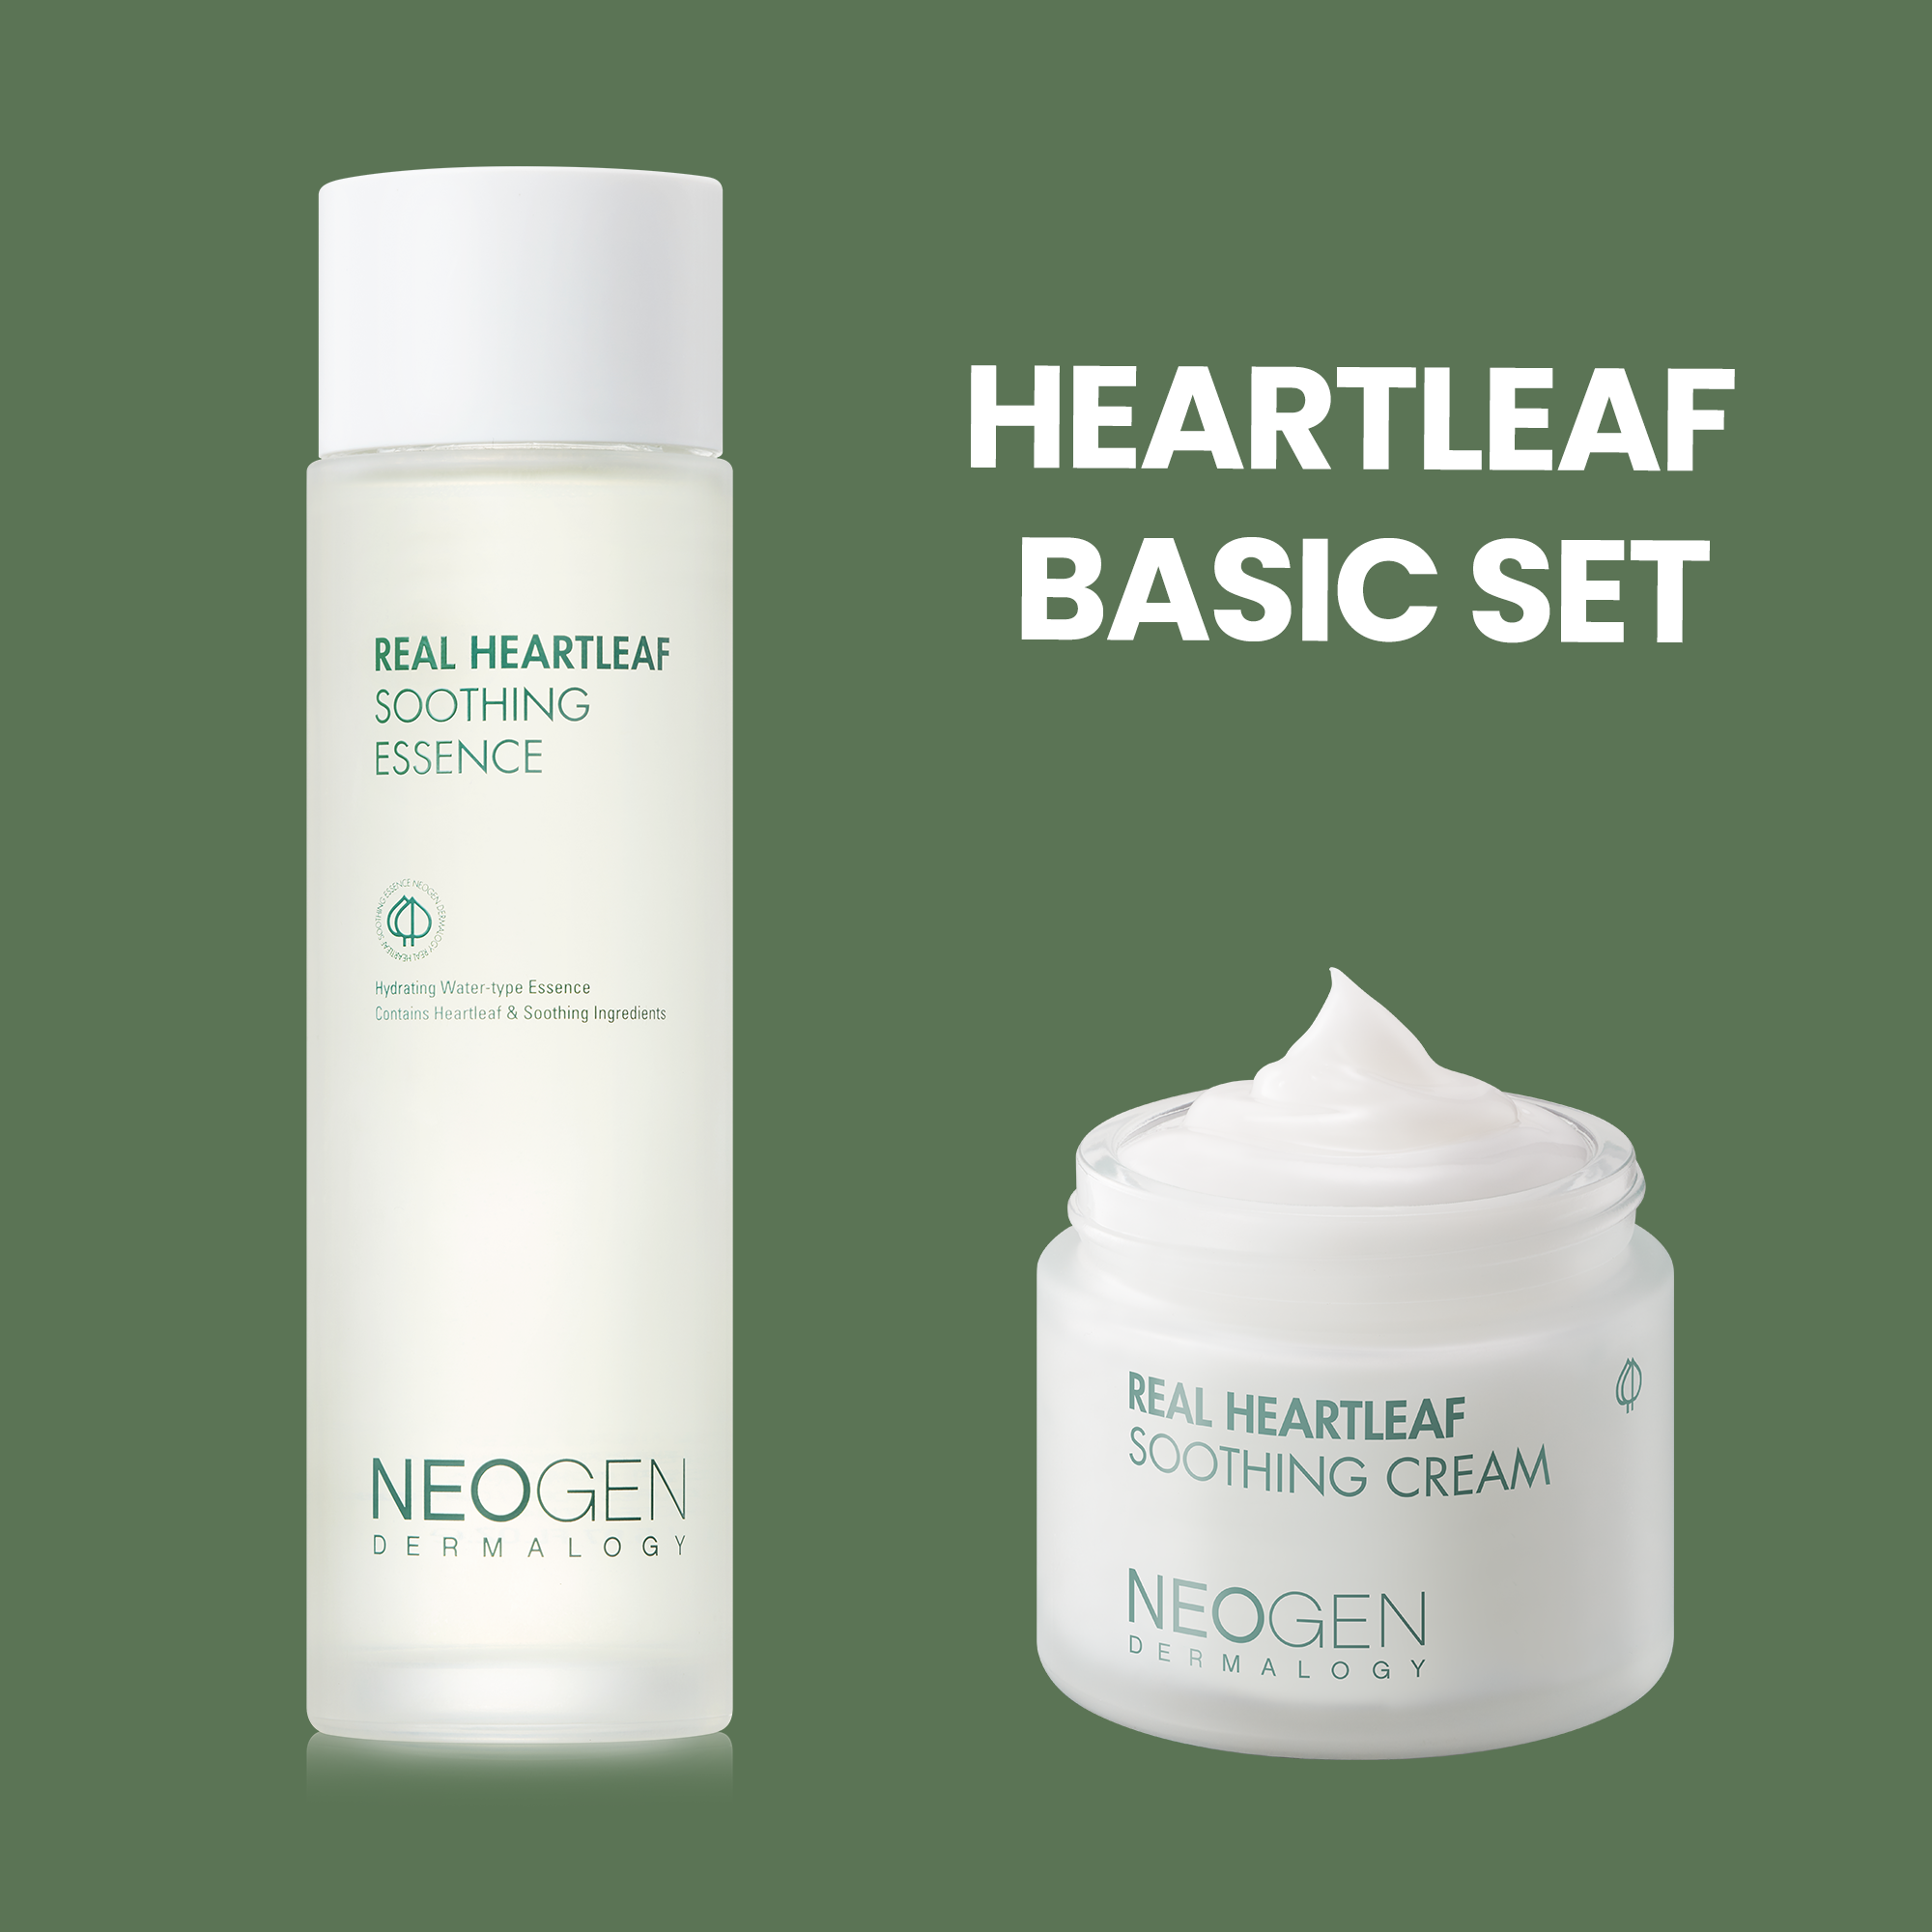 Heartleaf Basic Set (Real Heartleaf Soothing Essence,Real Heartleaf Soothing Cream)